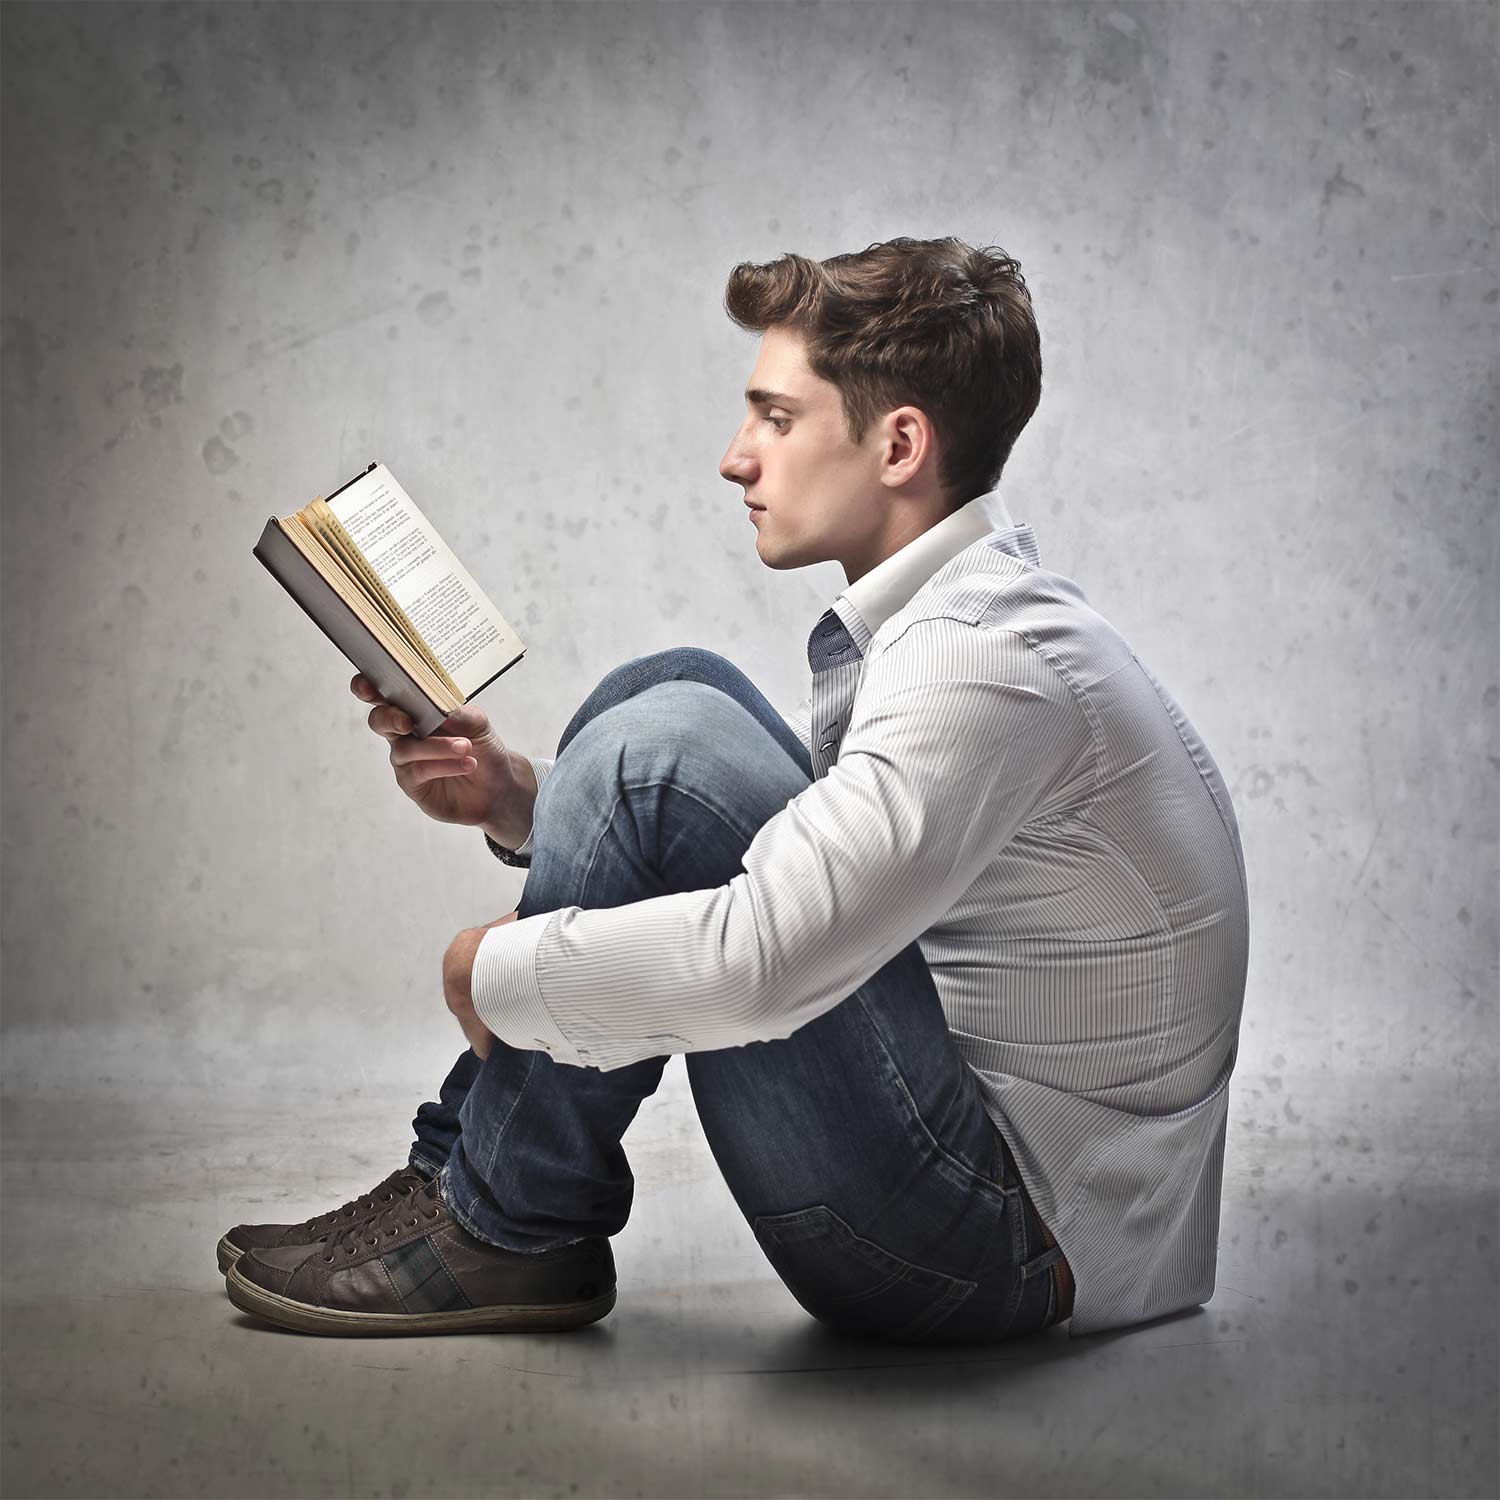 Читать книгу в теле пацана полностью. Парень с книгой. Человек с книжкой. Человек с книгой в руках. Мужчина с книгой в руках.